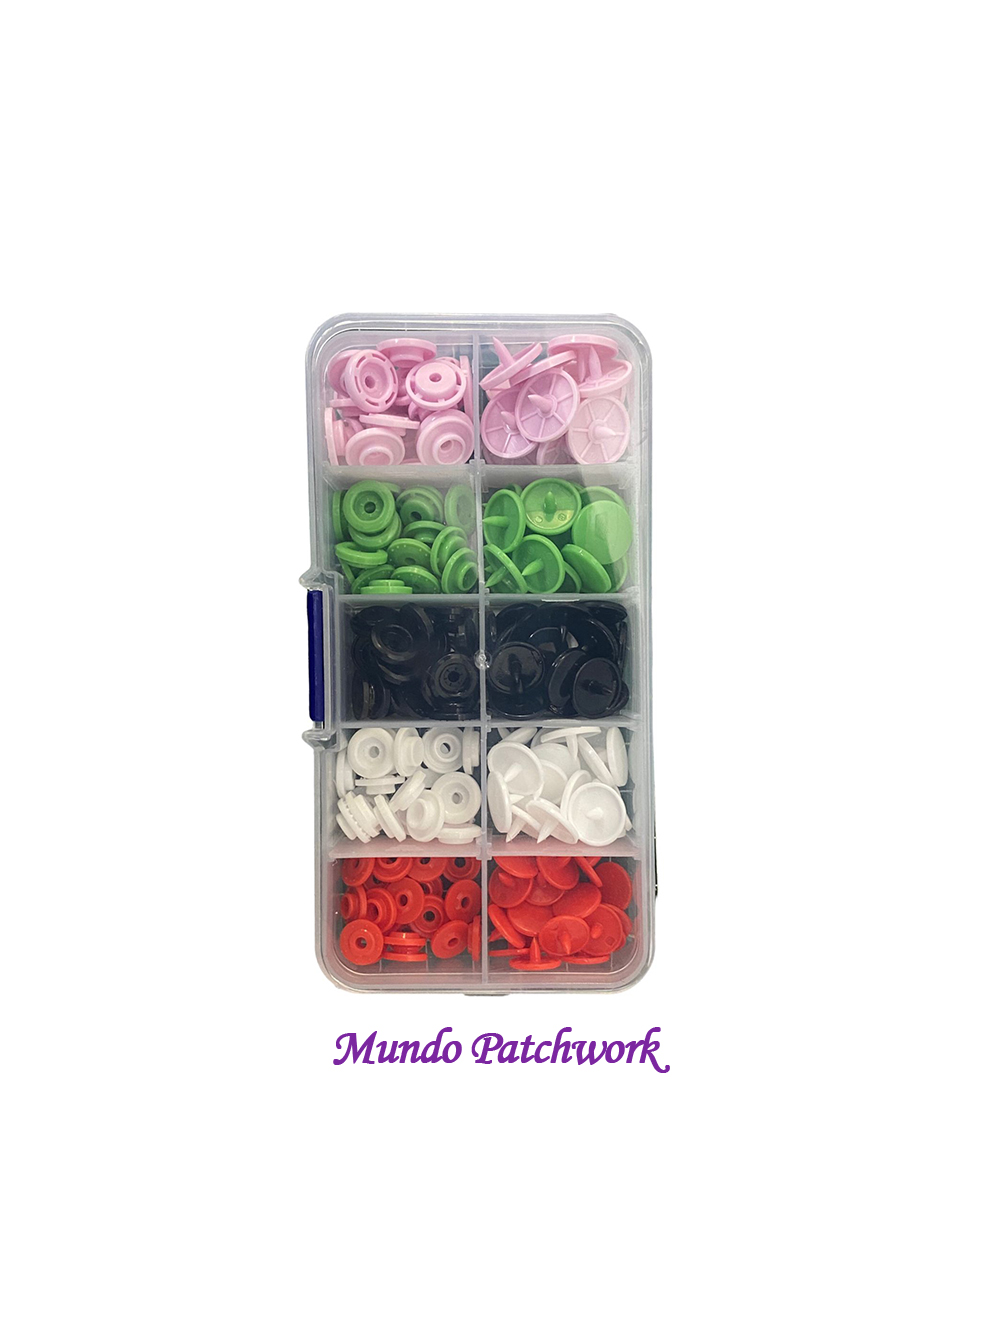 Set 067 – 50 Snaps plásticos 5 colores diferentes, 10 por color miden 10 mm  – MundoPatchwork